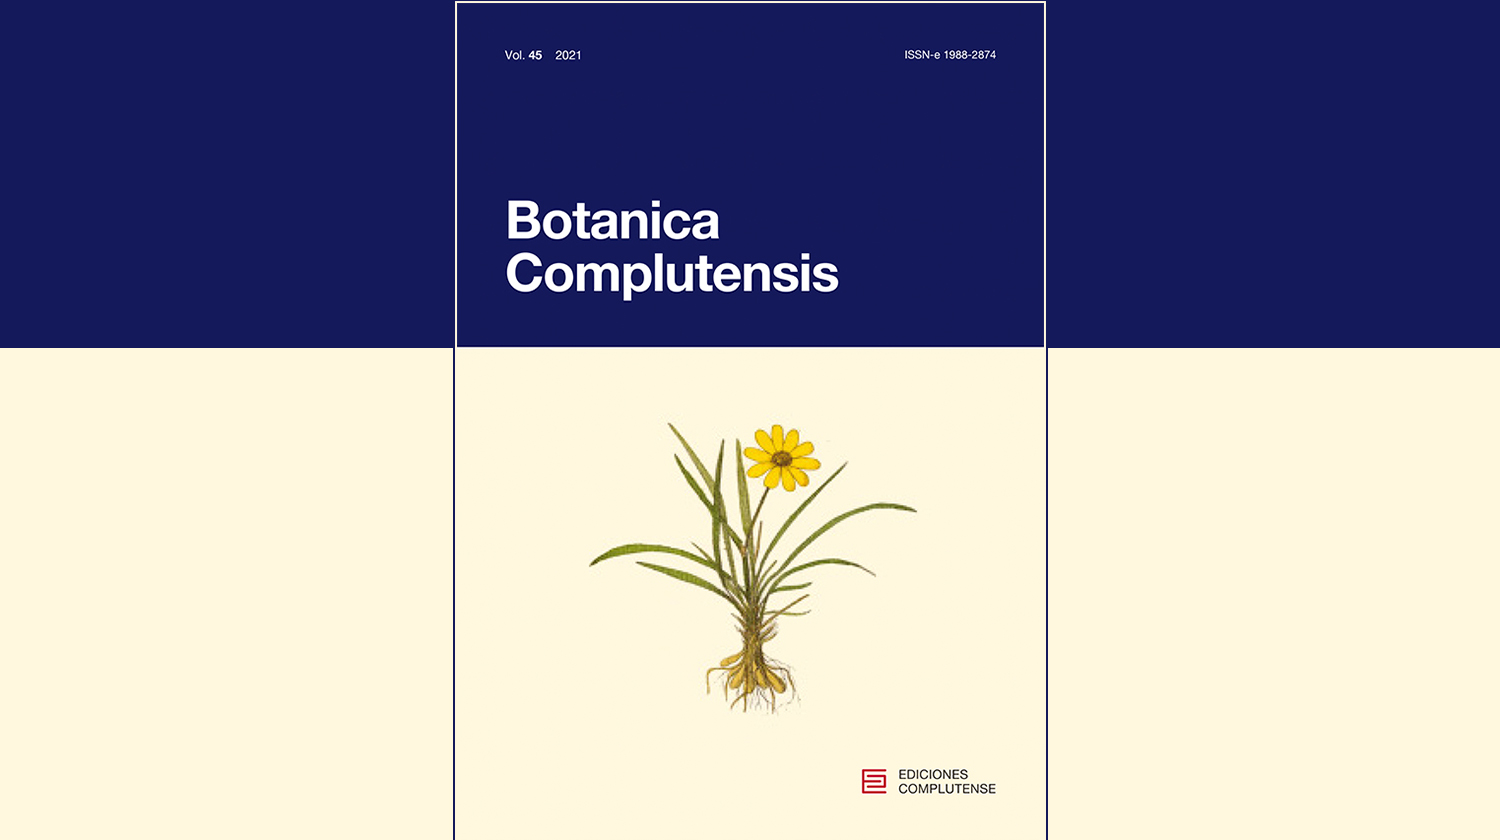 Publicado en línea el volumen 45 de Botanica complutensis que sus compañeros de la UD de Botánica dedican a la memoria de José María Gabriel y Galán.